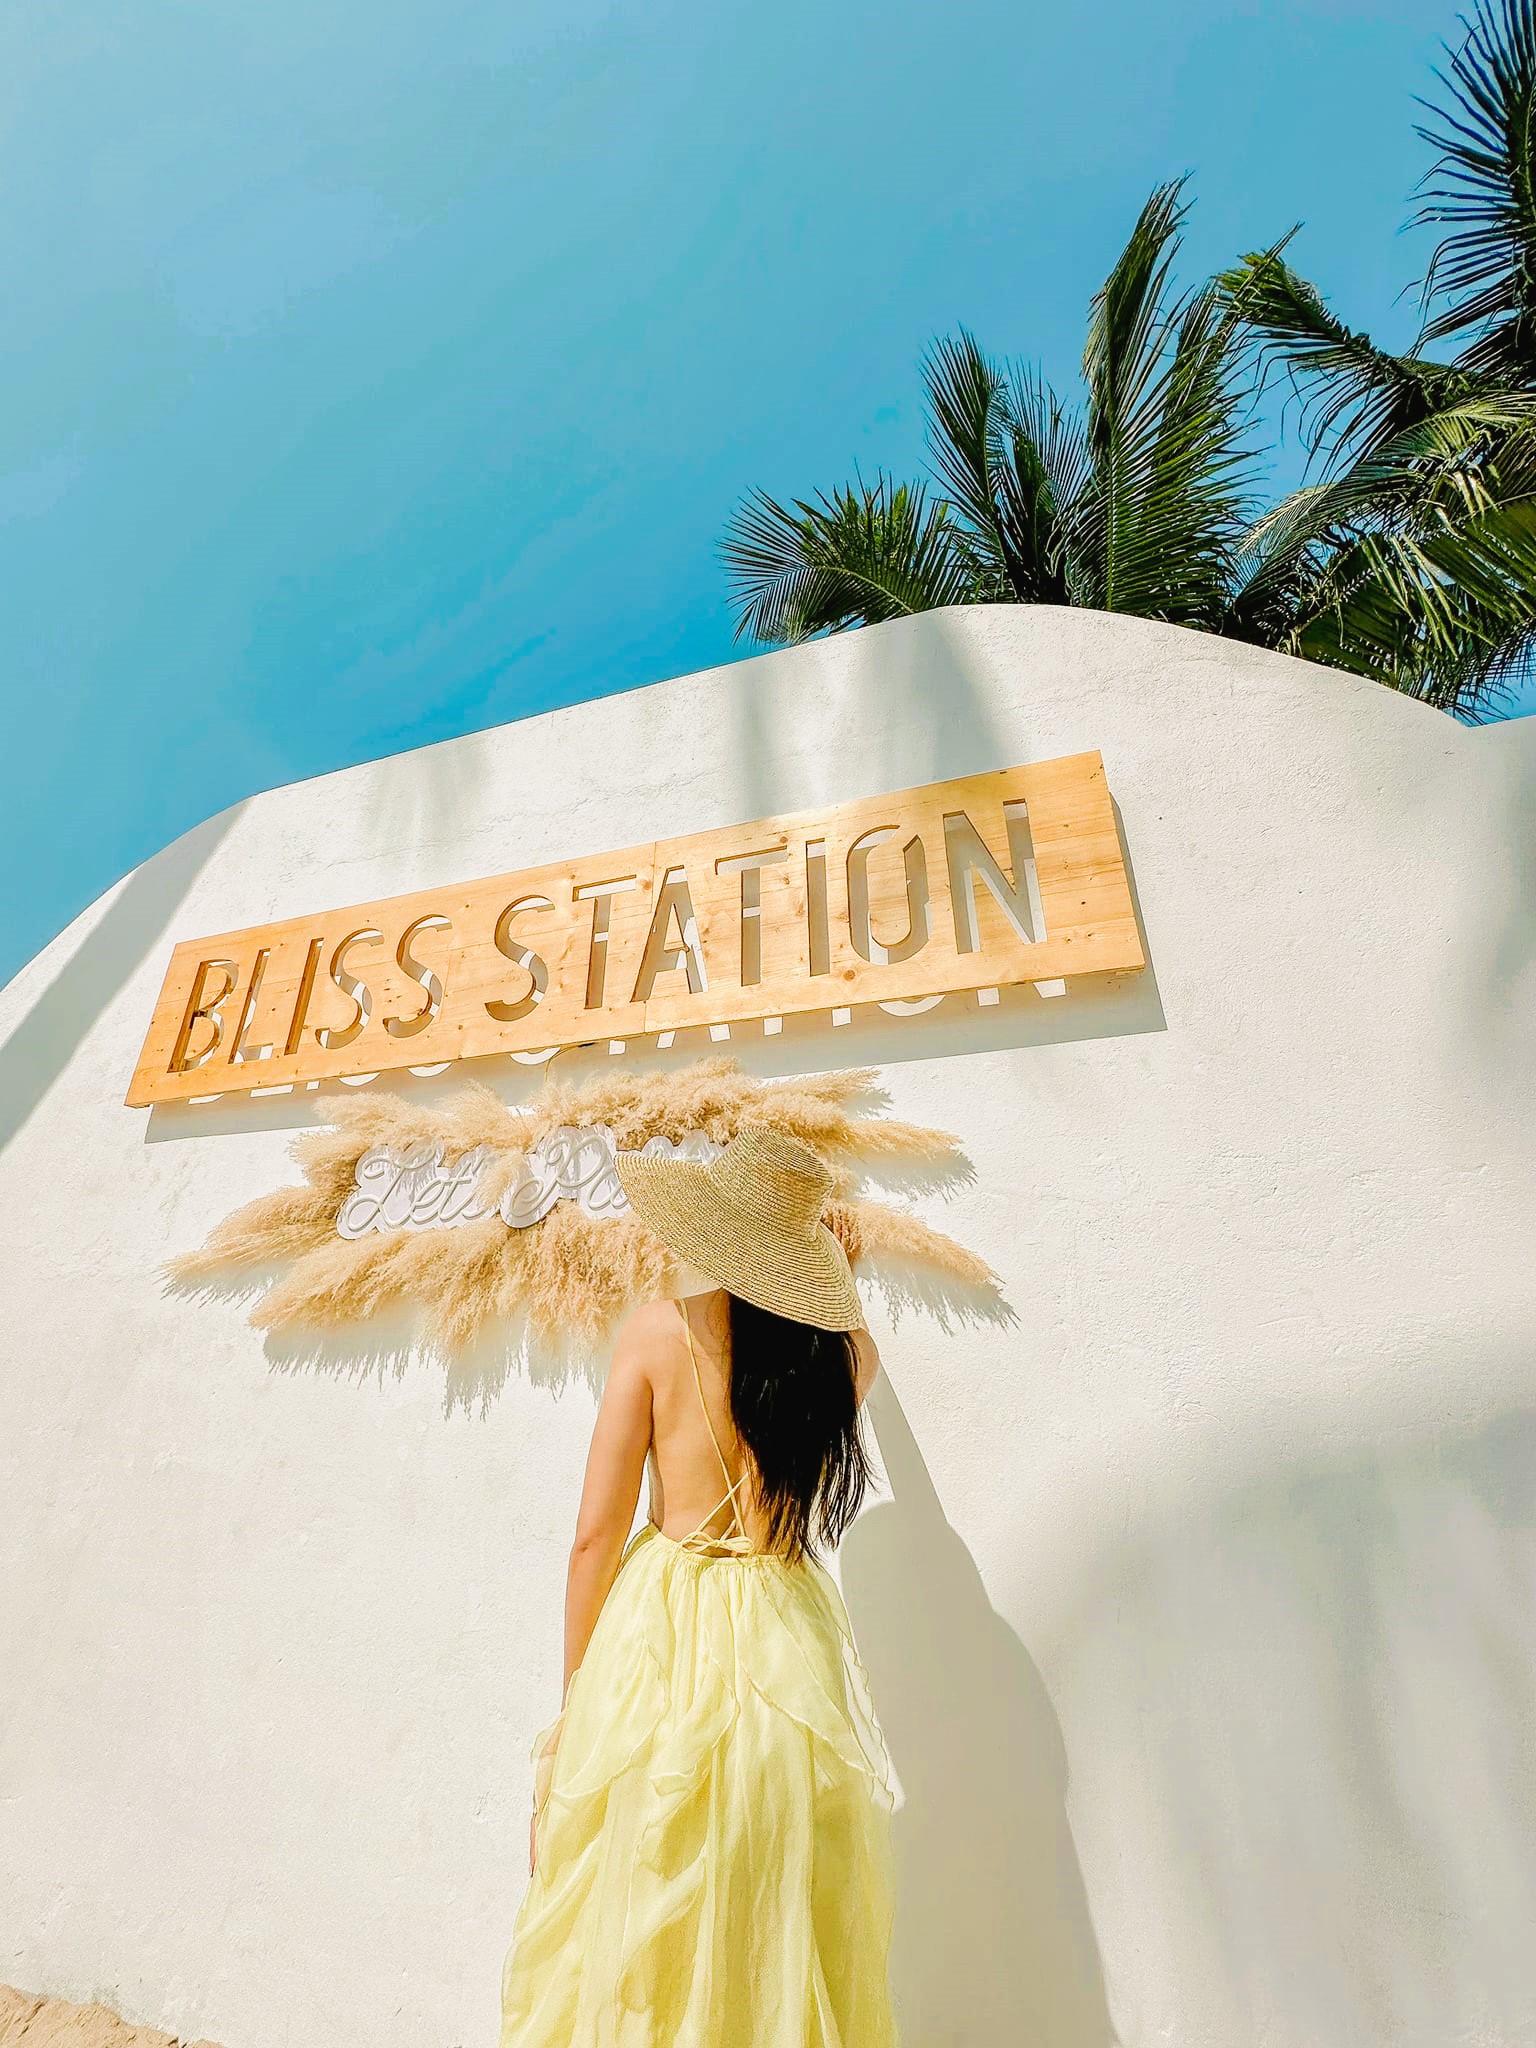 Bliss Station Cafe View Biển Mũi Né Tuyệt Đẹp!